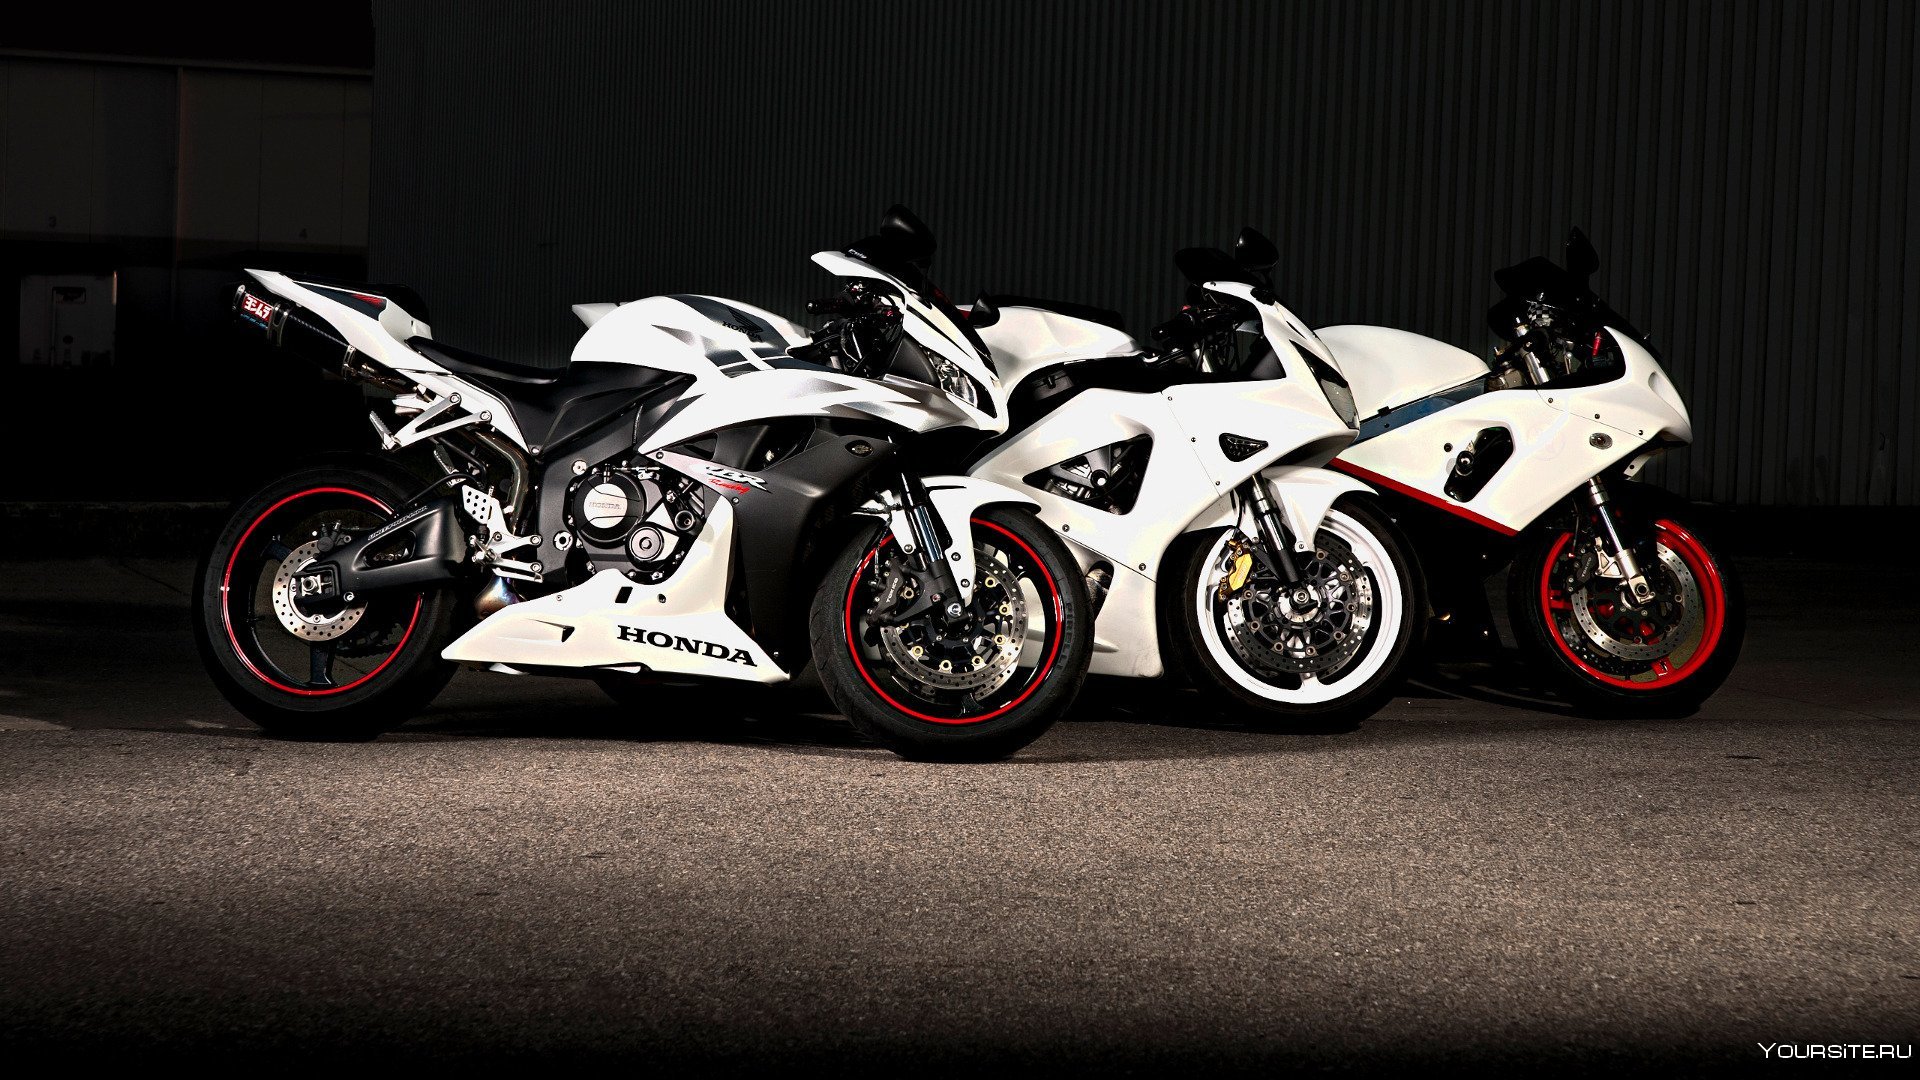 Обои на стол мотоциклы. Honda cbr600rr. Мотоцикл Хонда CBR 600 RR. Honda cbr600rr Race. Honda cbr600rr белый.